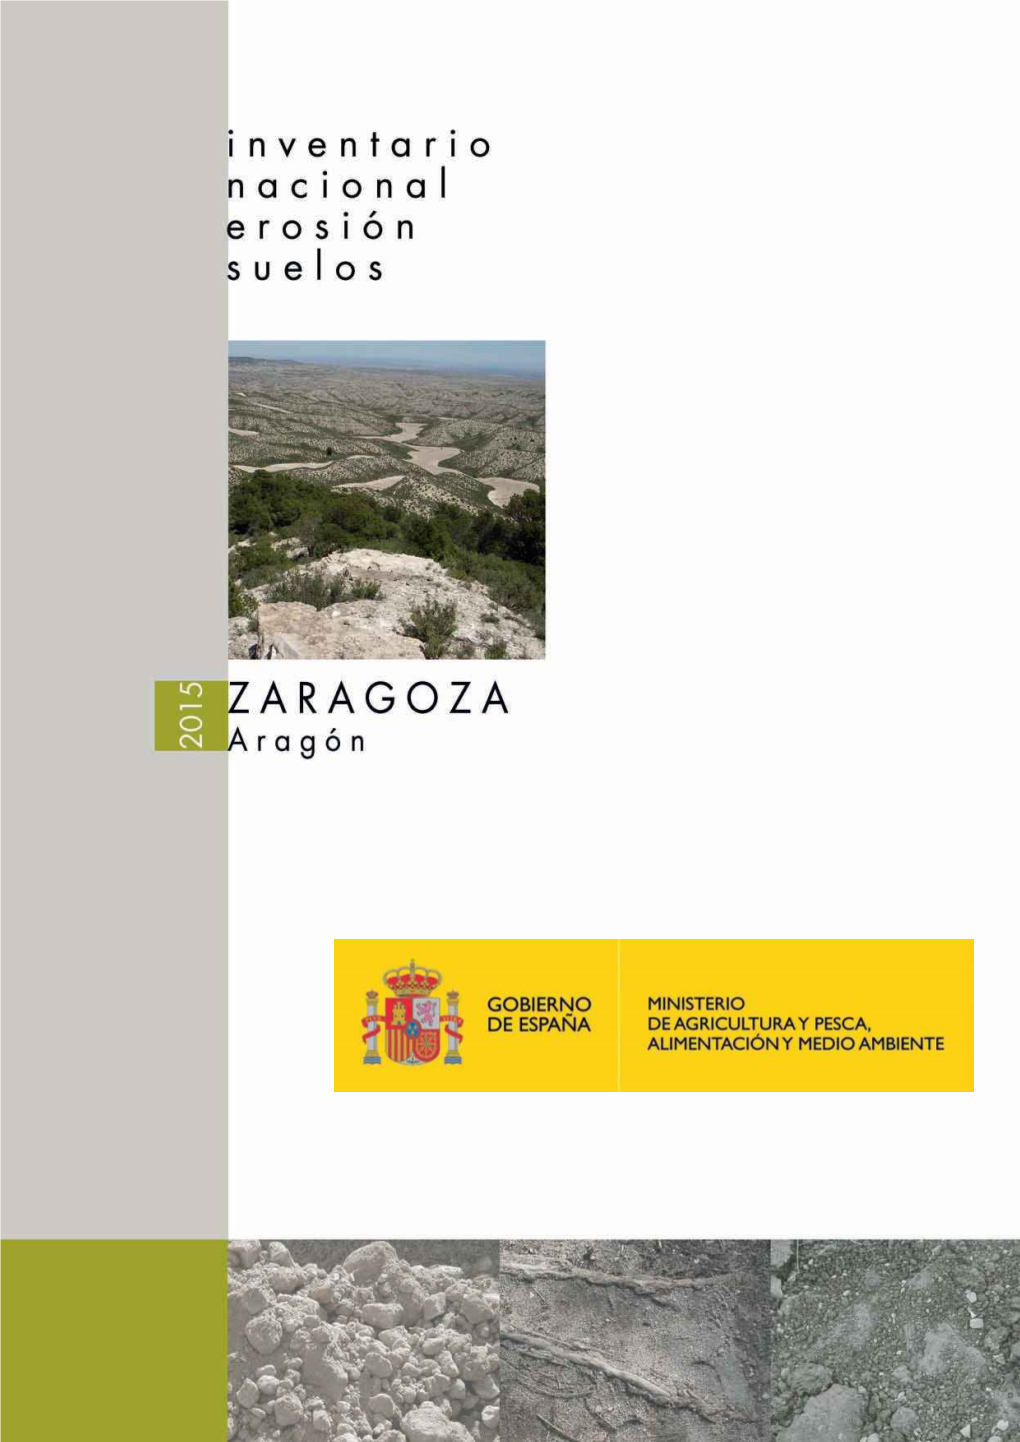 Memoria Del Inventario Nacional De Erosion De Suelos En Zaragoza